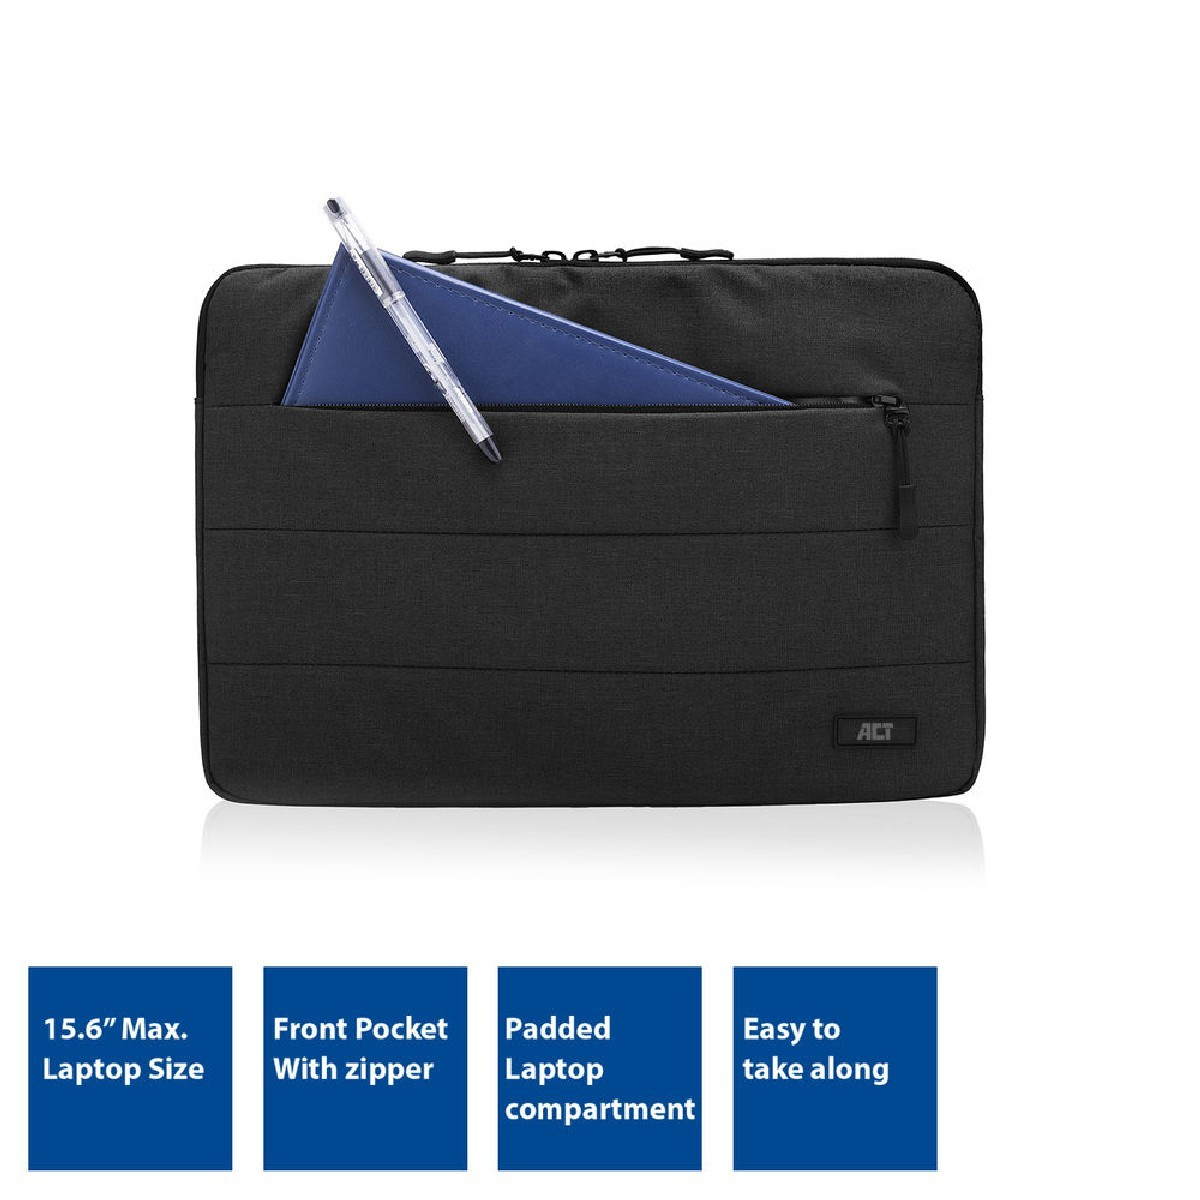 AC8520 schwarz Polyester, City Notebooktasche universal für Laptop-Tasche ACT Sleeve